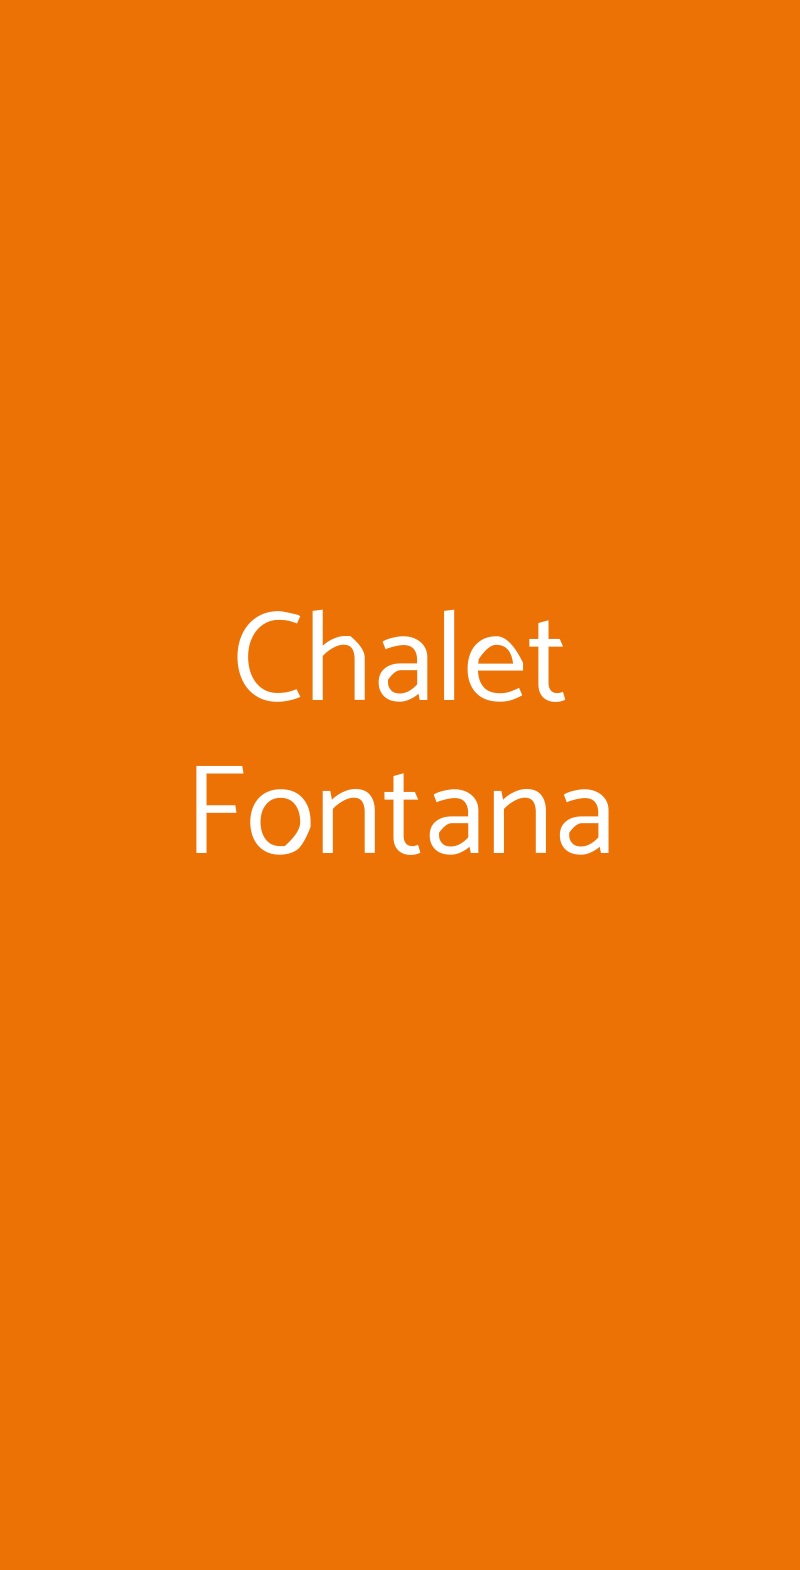 Chalet Fontana Firenze menù 1 pagina